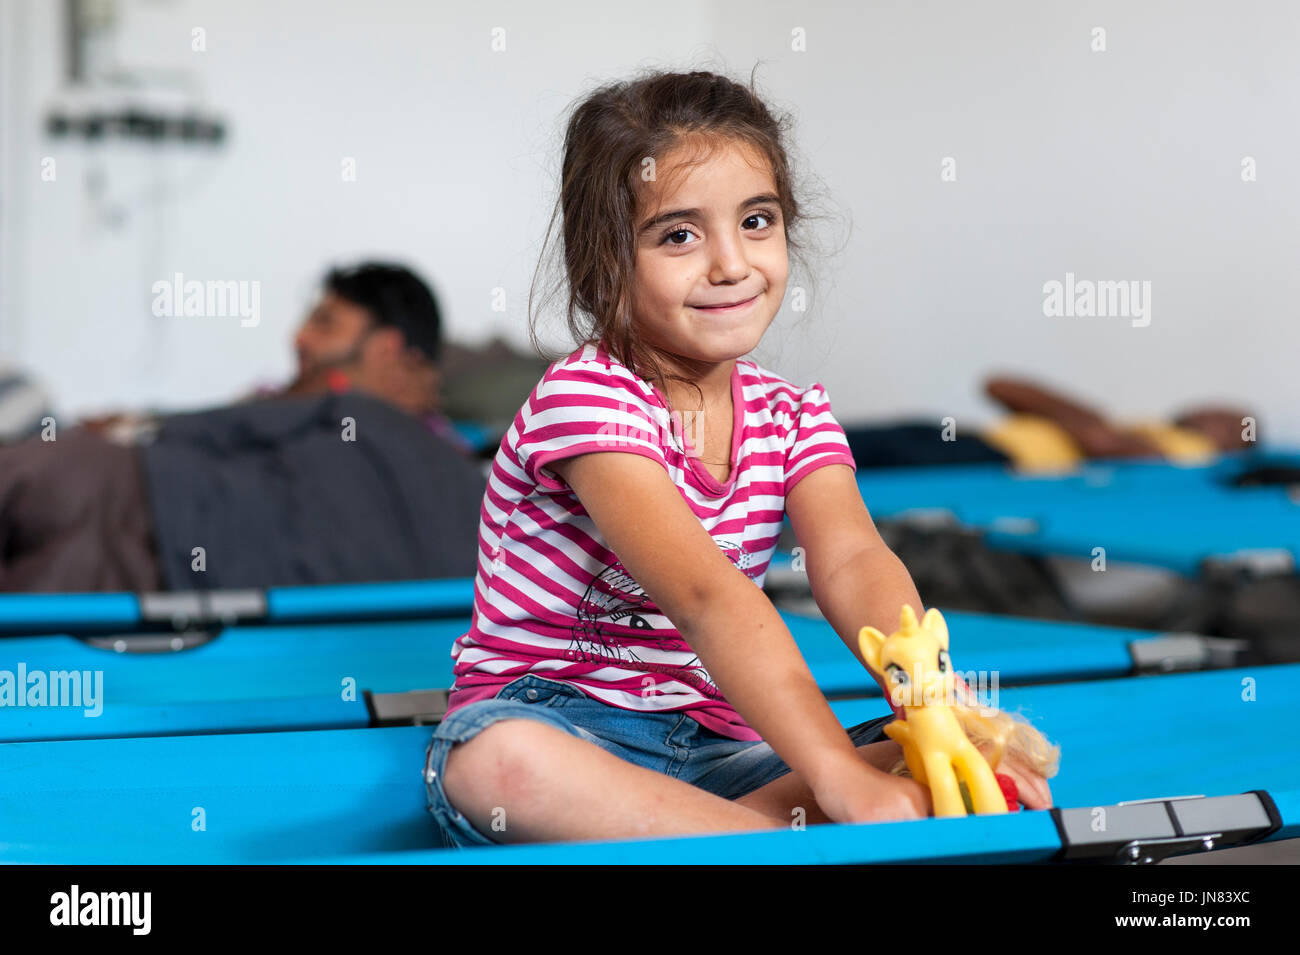 Passau, Allemagne - 1er août 2015 : fille syriens réfugiés dans un camp à Passau, Allemagne. Elle est heureuse d'arriver en toute sécurité après avoir fui la guerre civile. Banque D'Images